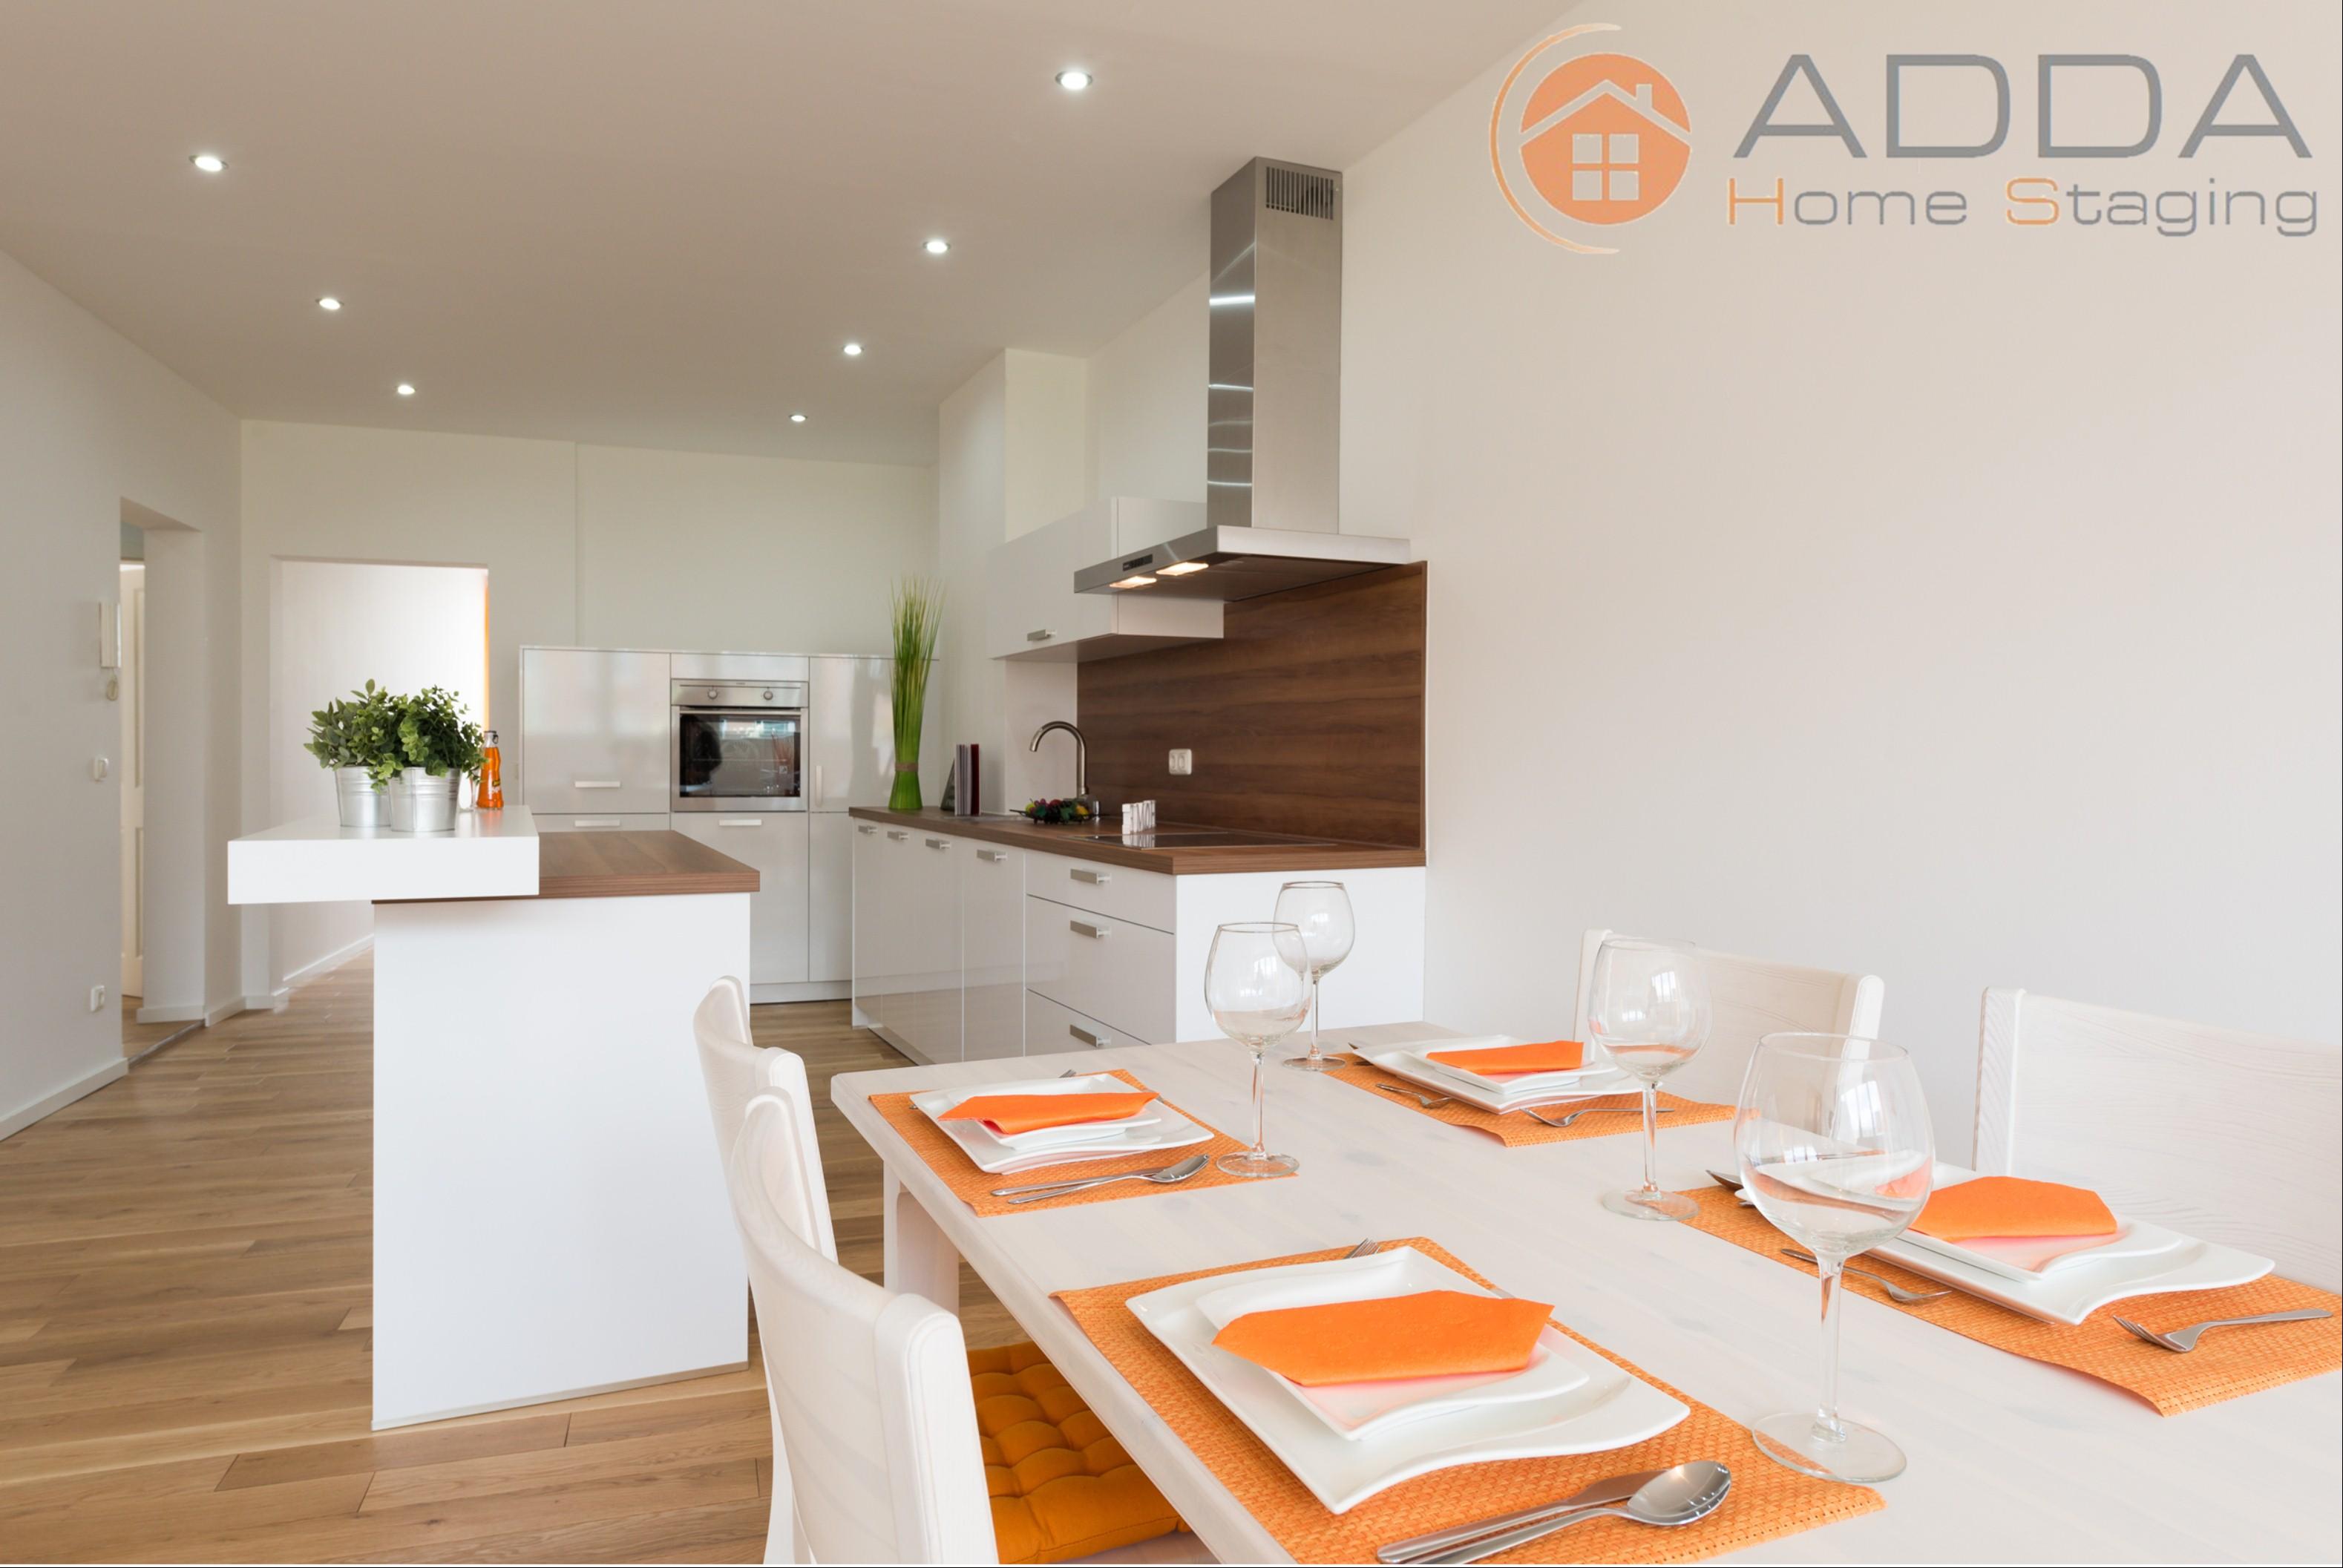 Esszimmer / Küche nach dem Home Staging #küche #offeneküche ©ADDA Home Staging